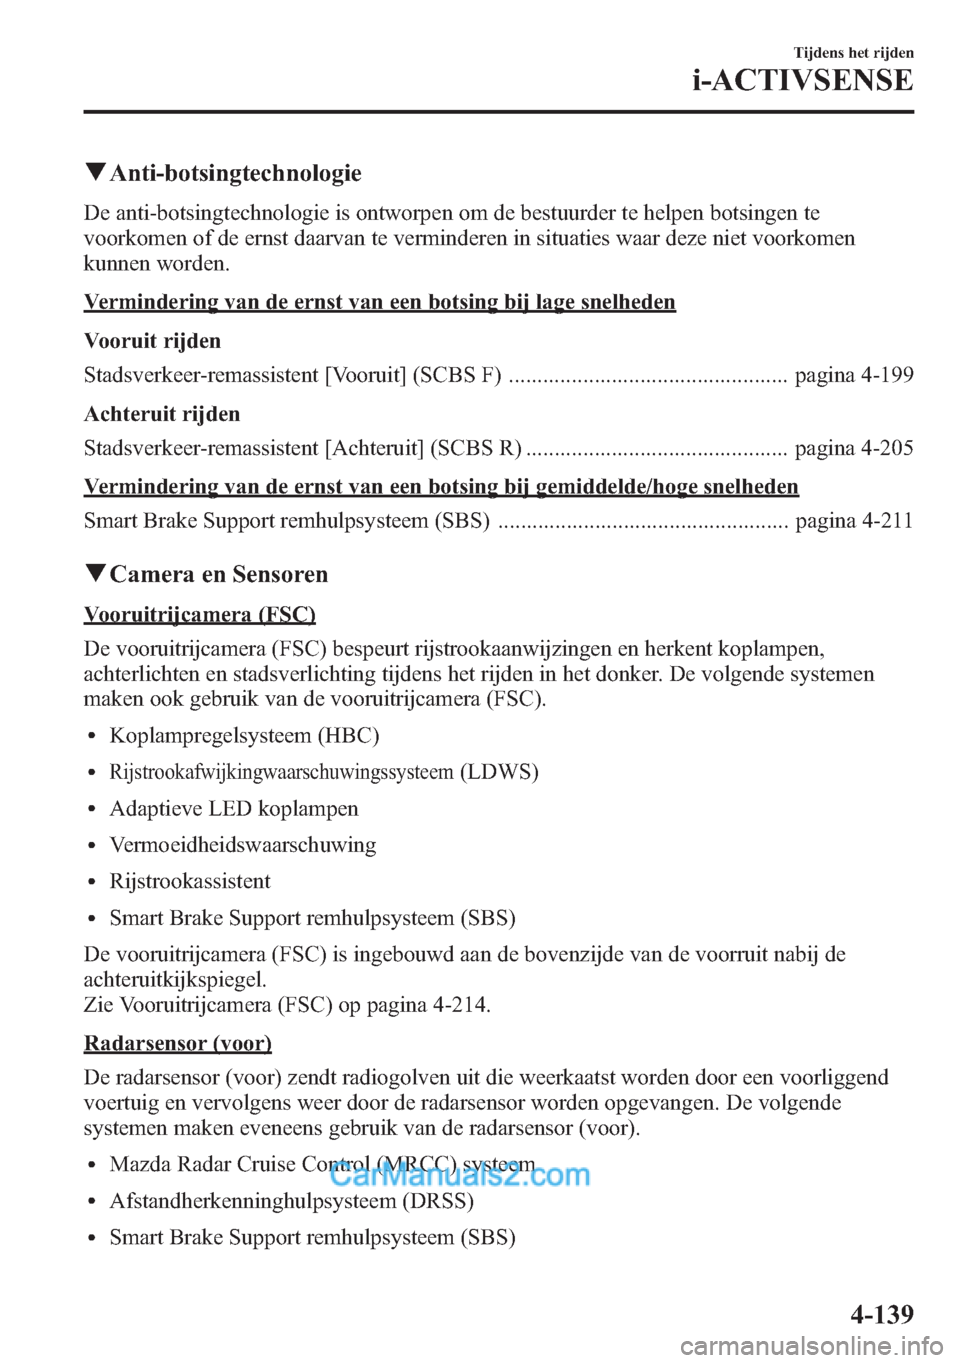 MAZDA MODEL CX-5 2015  Handleiding (in Dutch) qAnti-botsingtechnologie
De anti-botsingtechnologie is ontworpen om de bestuurder te helpen botsingen te
voorkomen of de ernst daarvan te verminderen in situaties waar deze niet voorkomen
kunnen worde